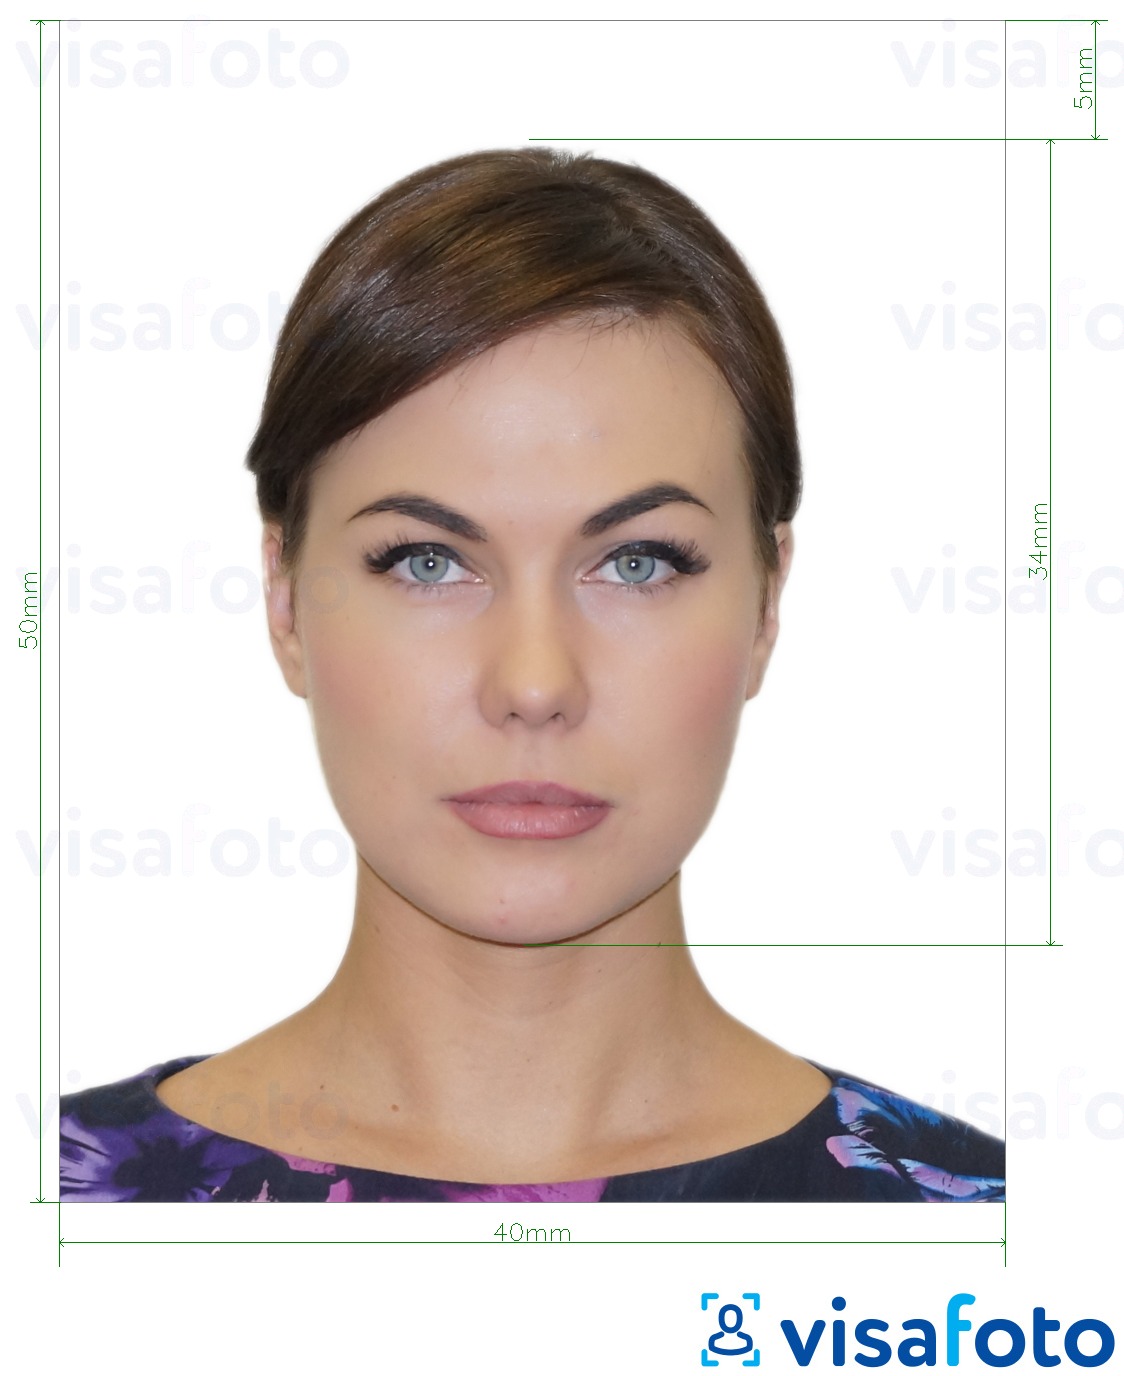 Příklad fotografie E-vízum do Albánie 4x5 cm s přesnou specifikací velikosti